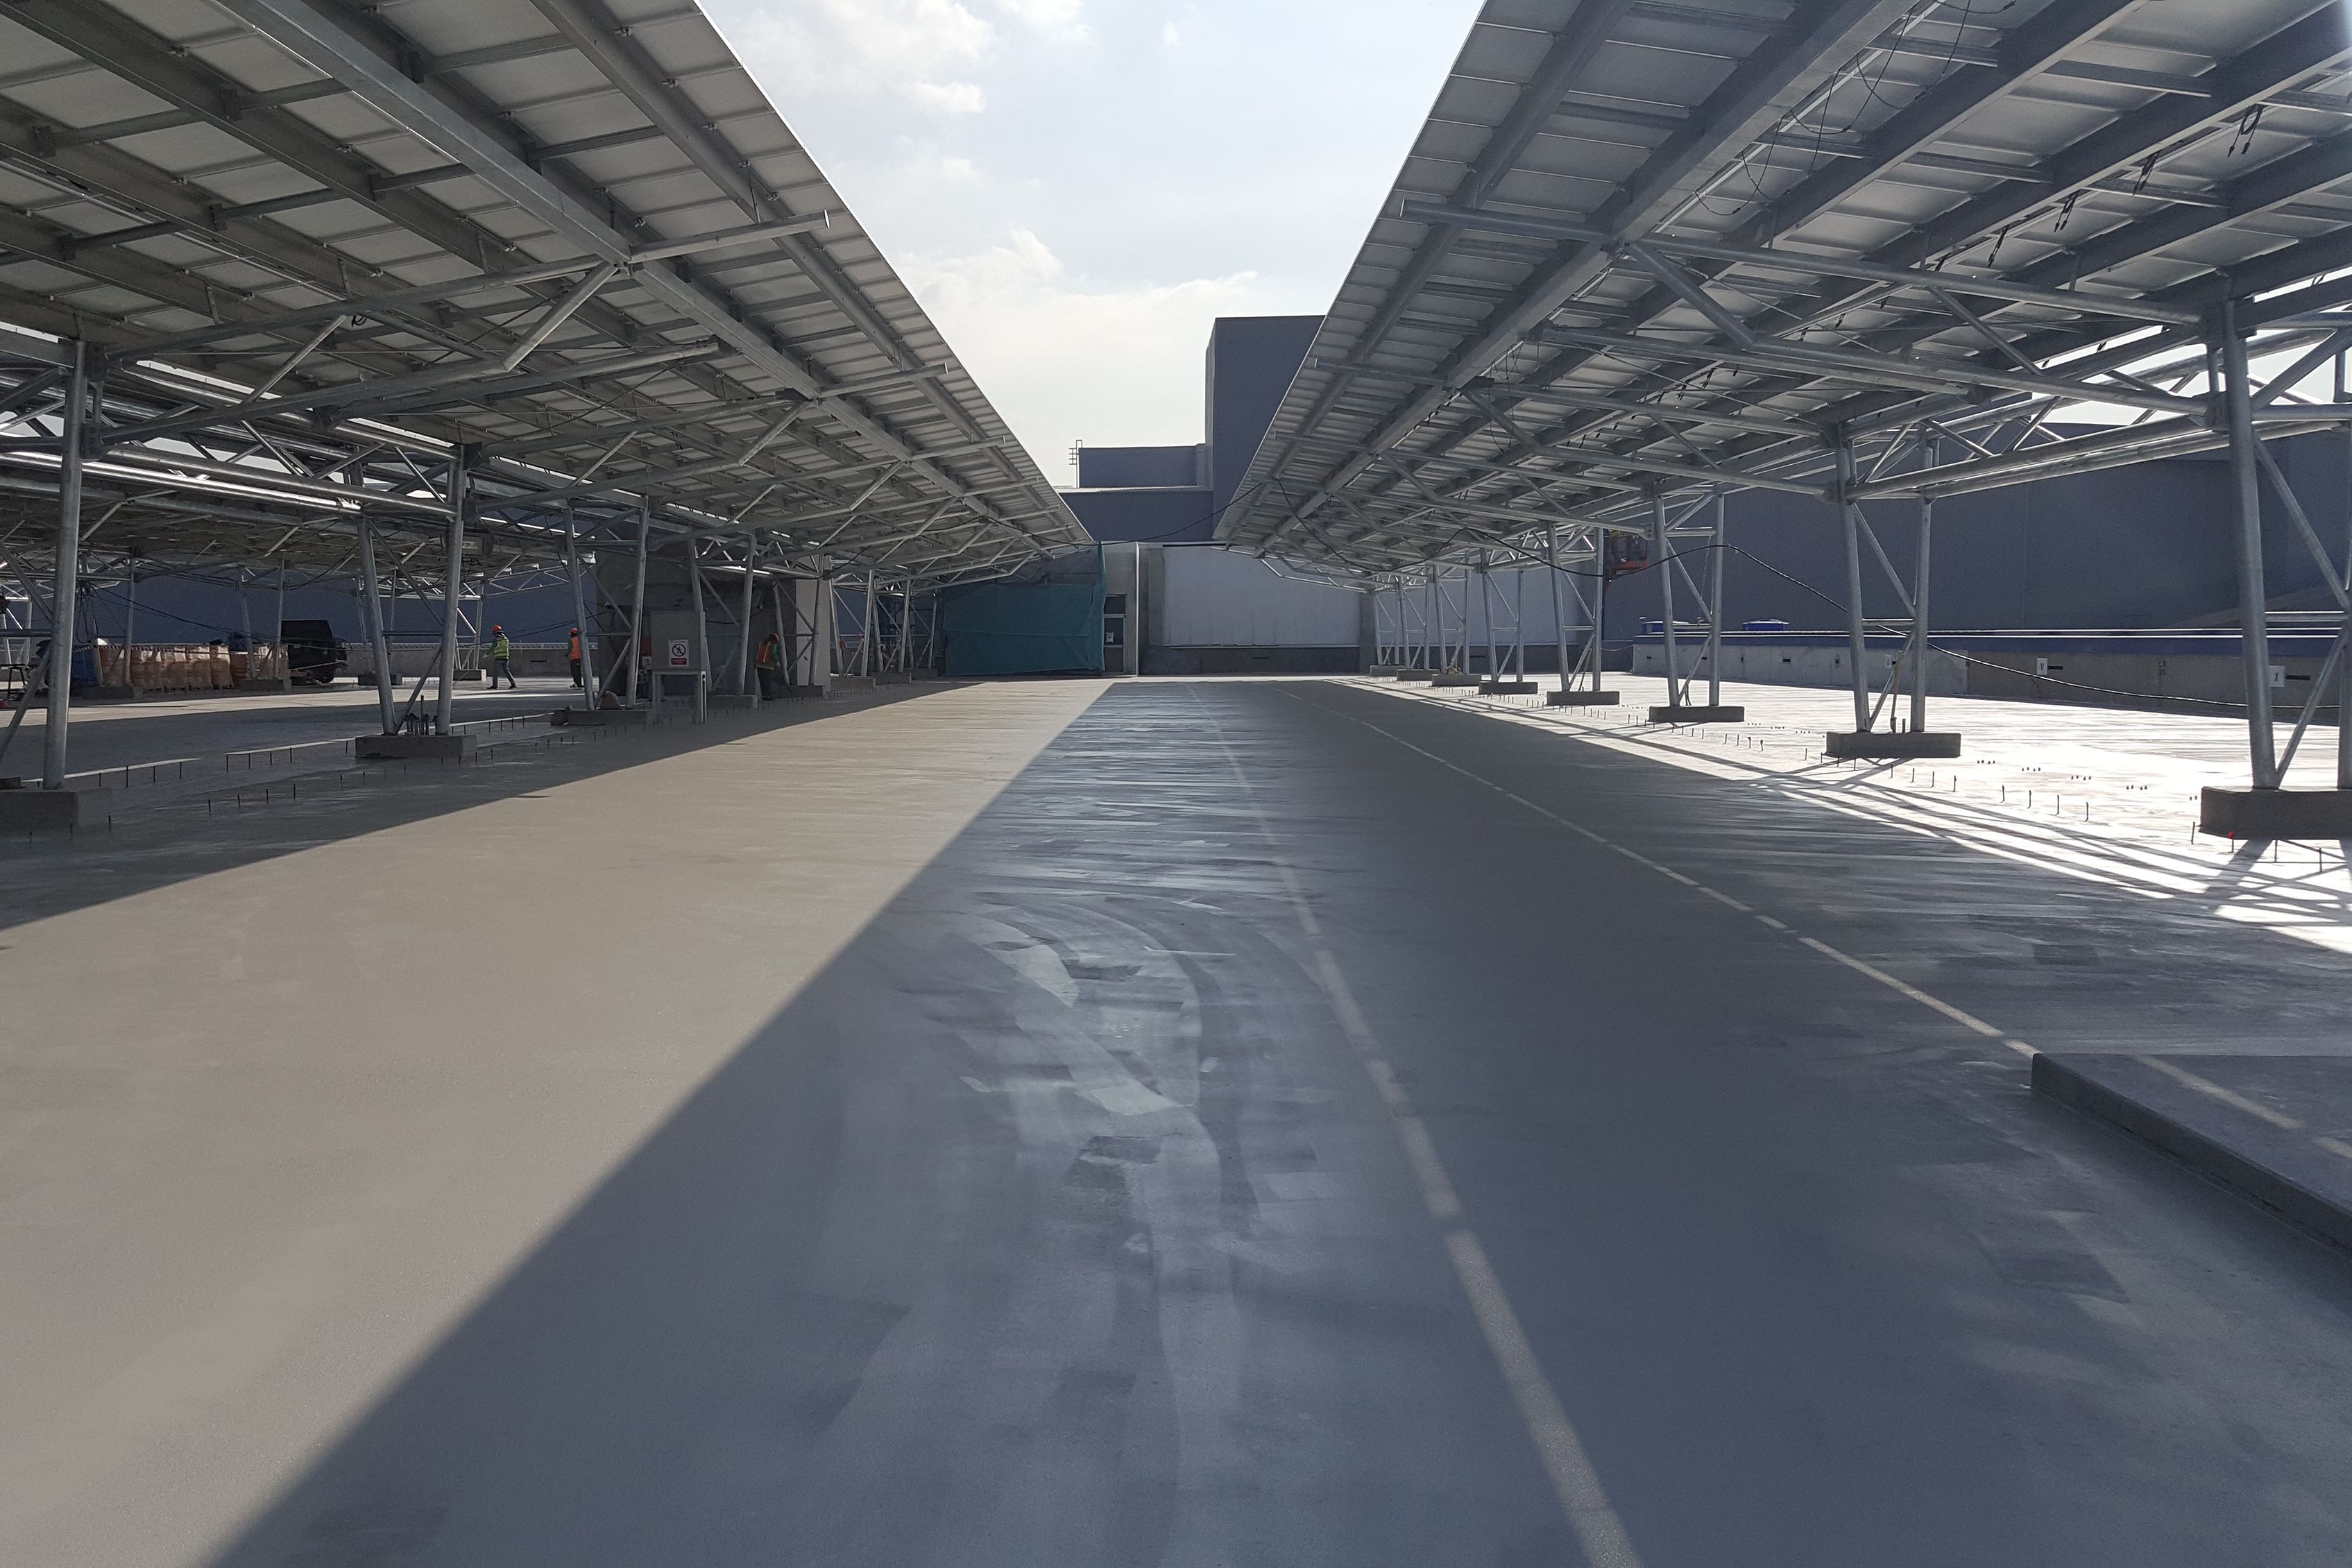 Industrial Floor for Car Park